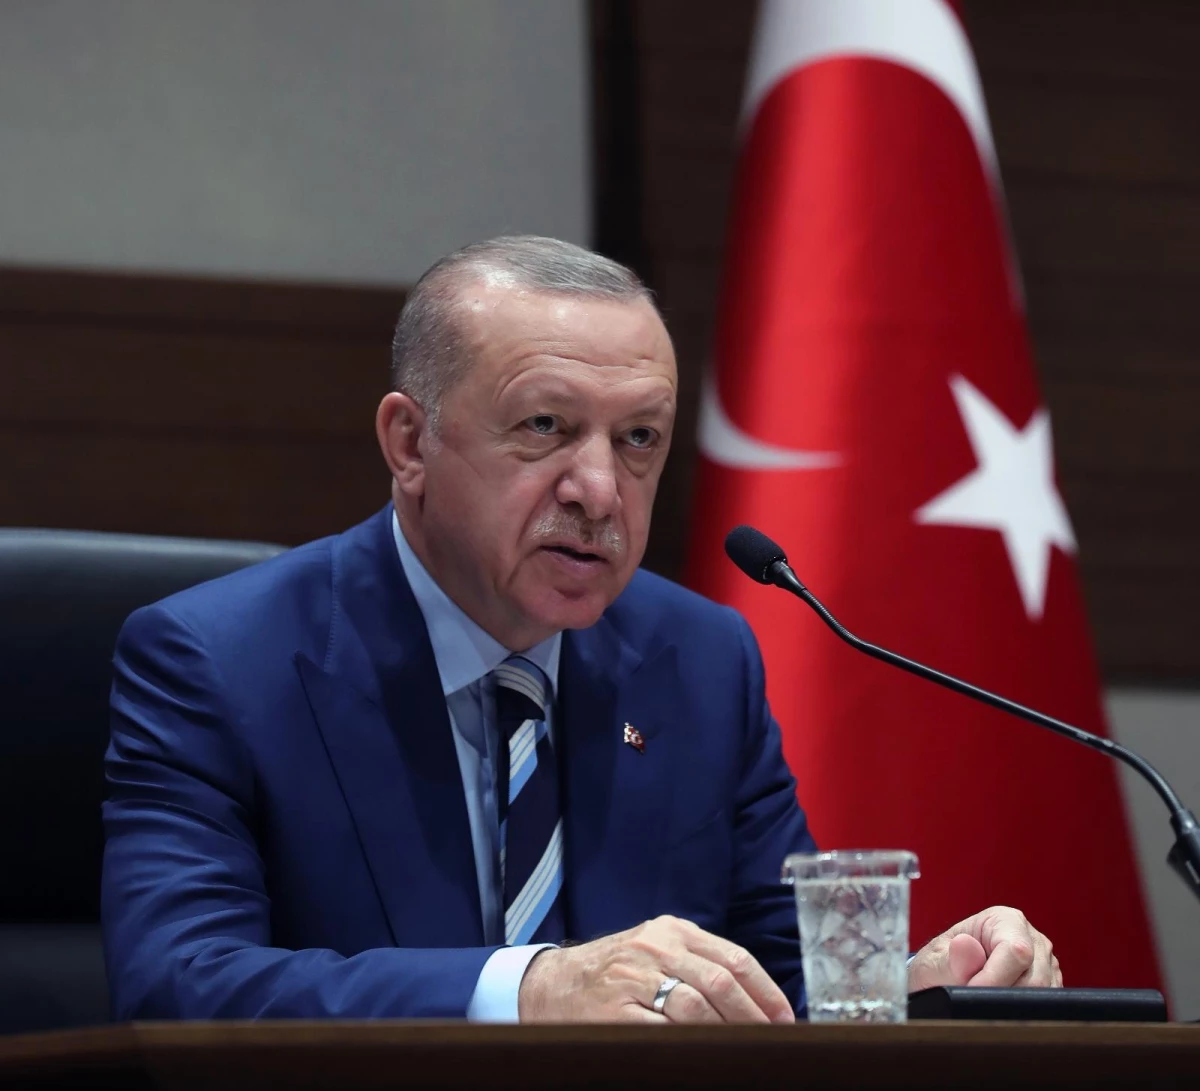 Cumhurbaşkanı Erdoğan: "Güvenilir besine erişim bir imtiyaz değil, temel bir haktır"